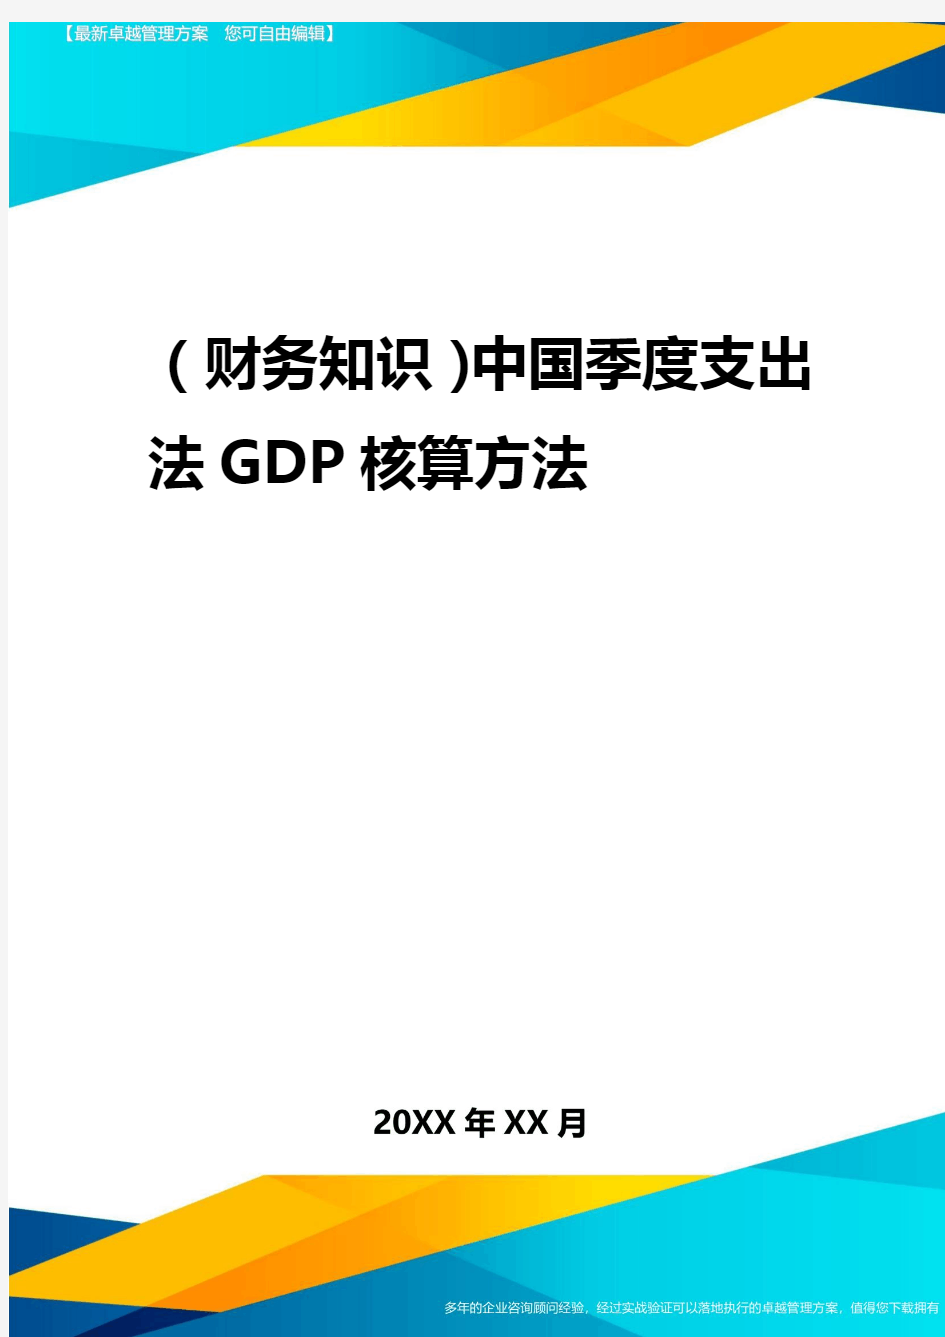 2020年(财务知识)中国季度支出法GDP核算方法